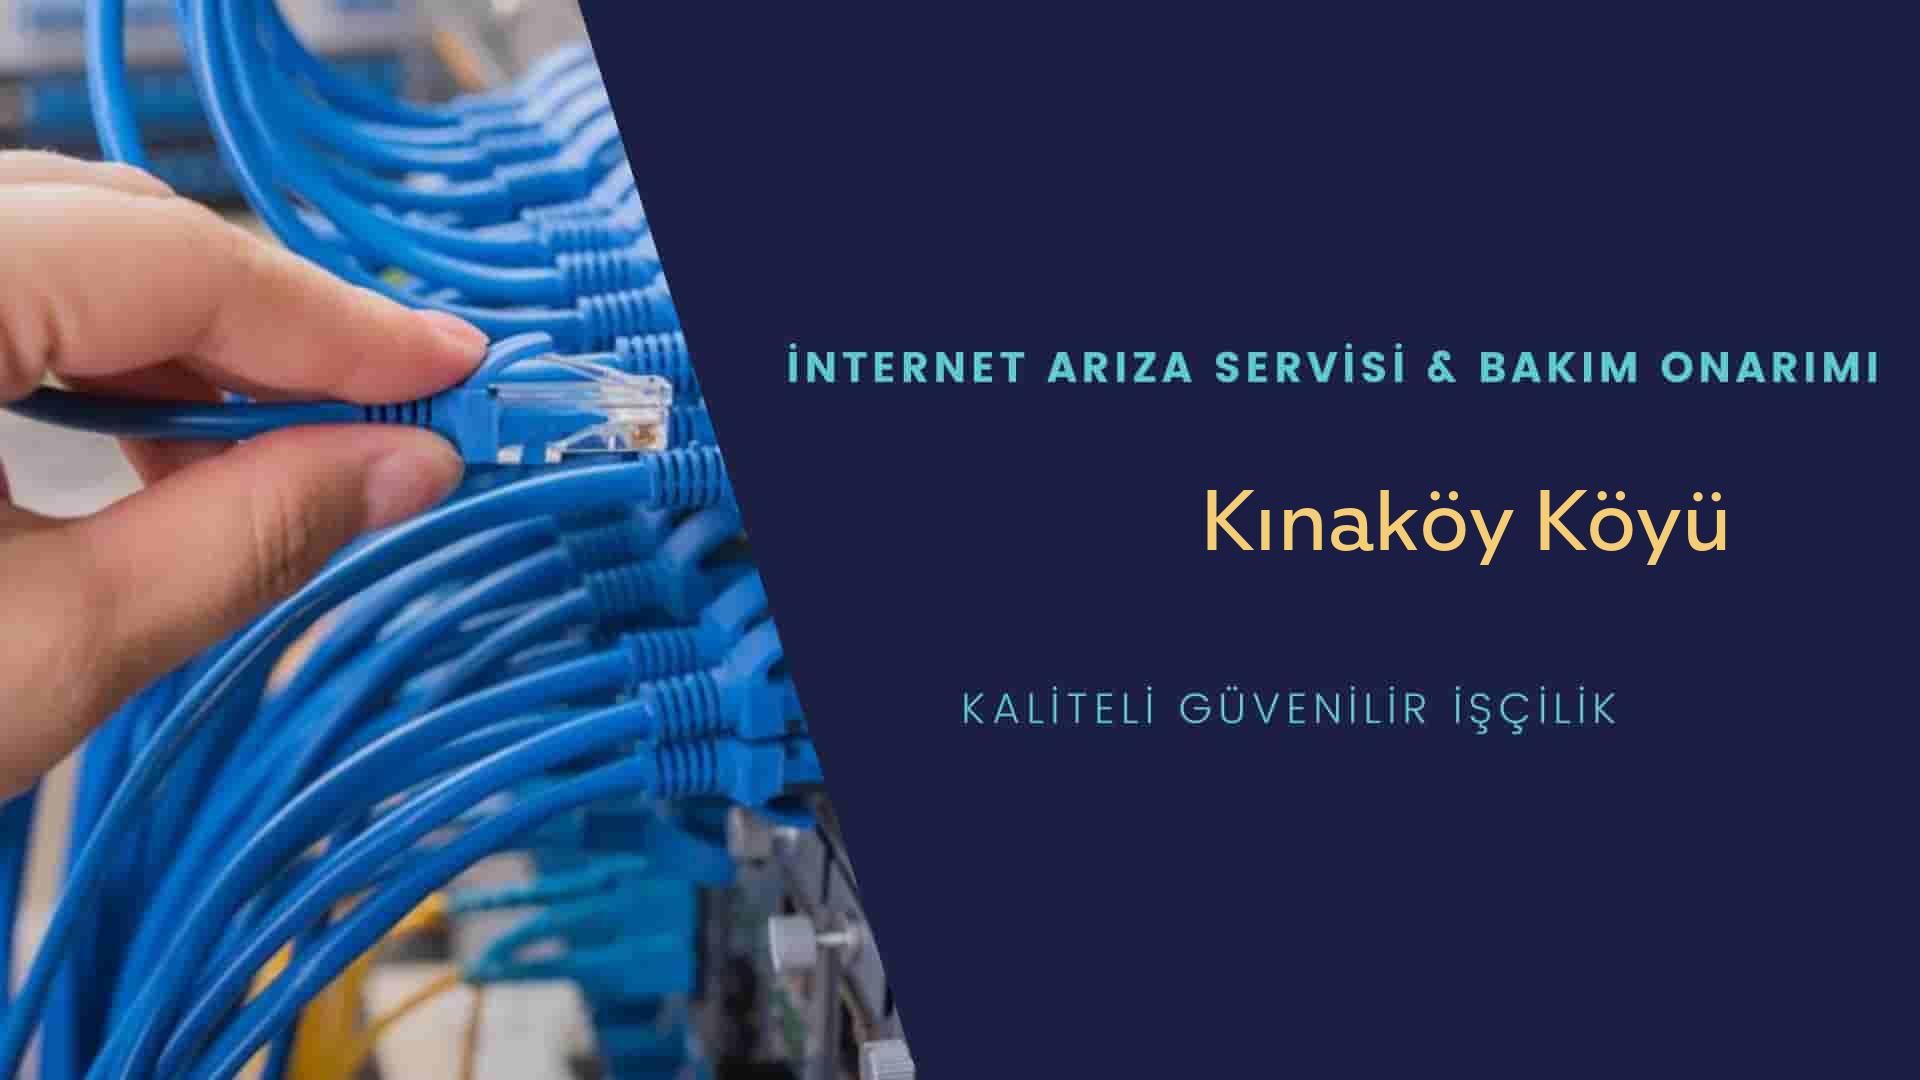 Kınaköy Köyü internet kablosu çekimi yapan yerler veya elektrikçiler mi? arıyorsunuz doğru yerdesiniz o zaman sizlere 7/24 yardımcı olacak profesyonel ustalarımız bir telefon kadar yakındır size.